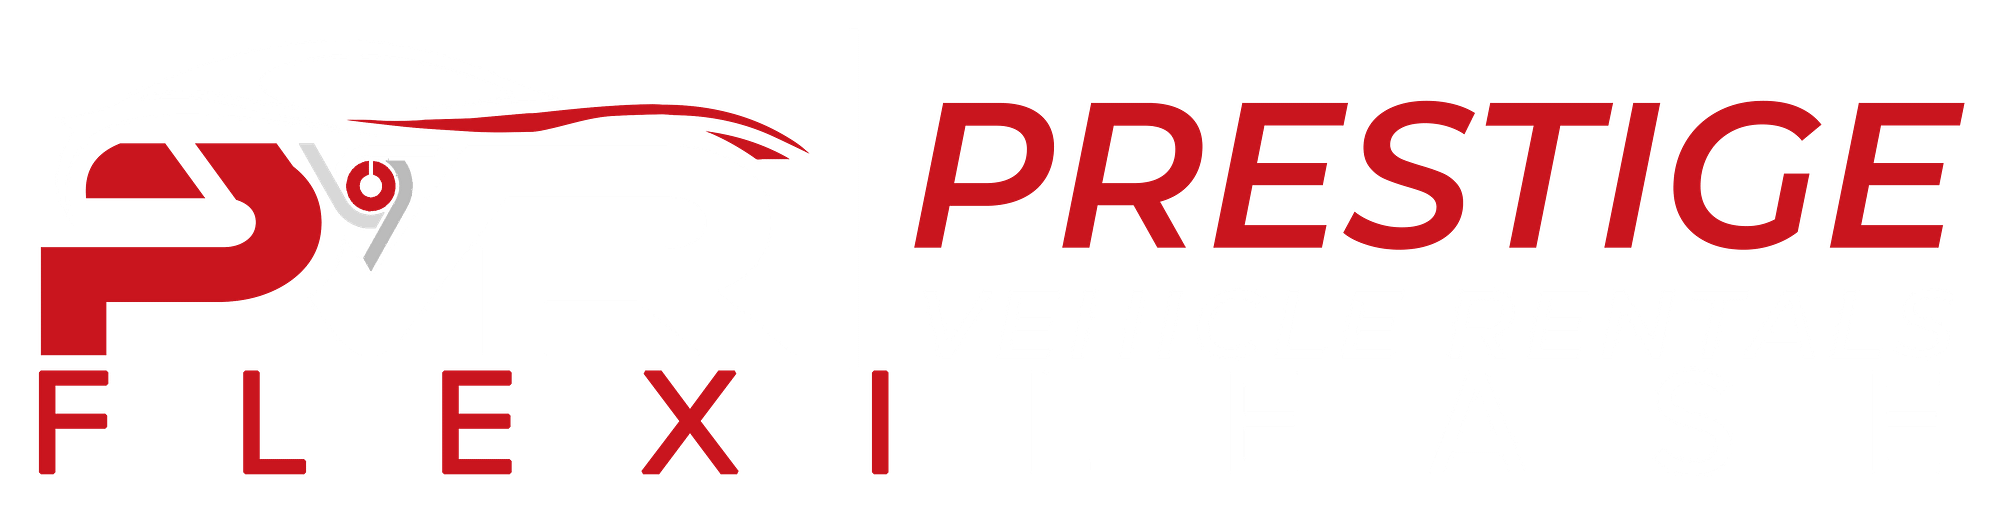 Prestige Vehicle Rentals